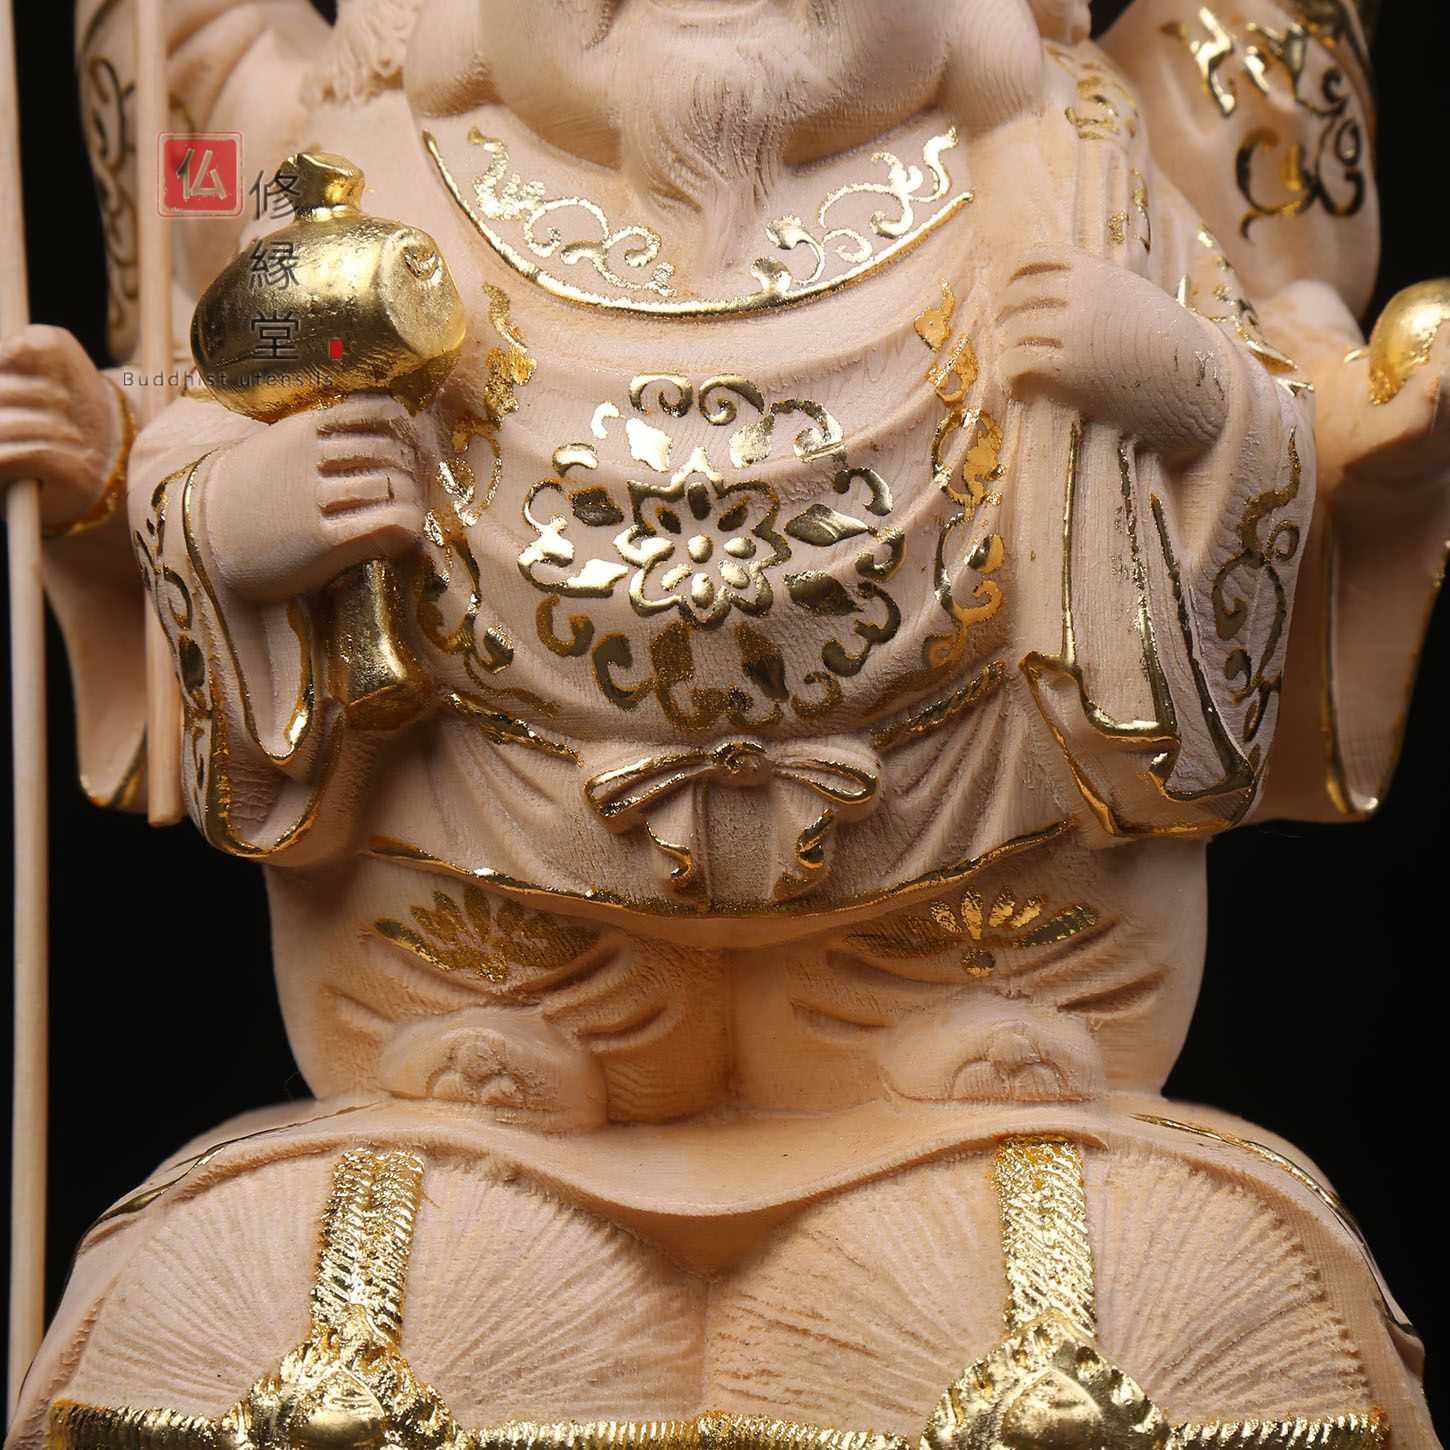 木彫り 三面大黒天立像 一刀彫 大迫力 木彫仏像 福神 仏教工芸品 - 美術品